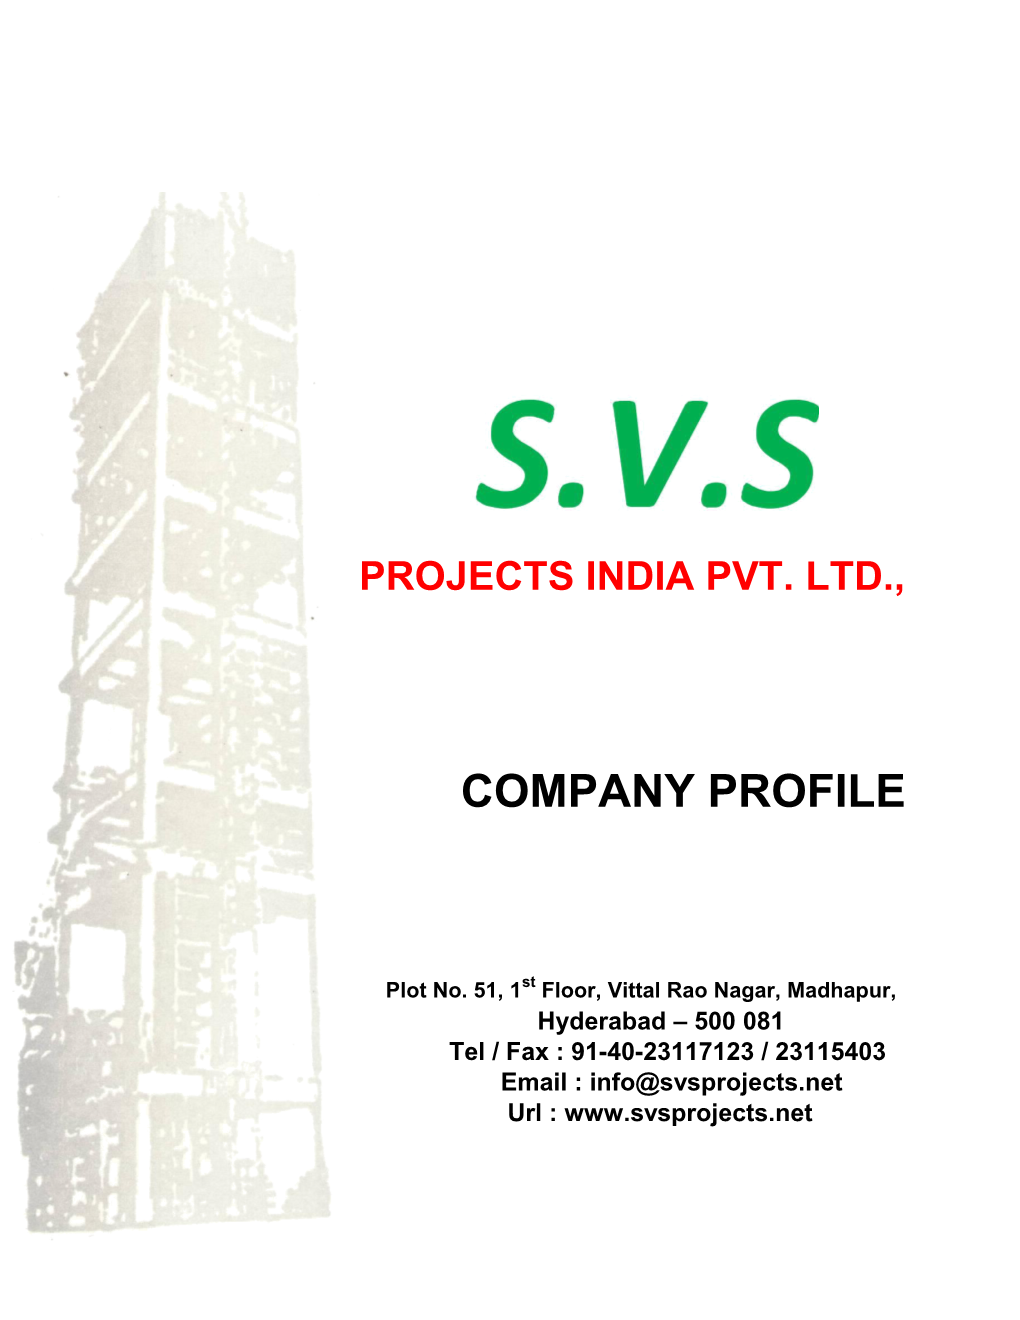 Projects India Pvt. Ltd